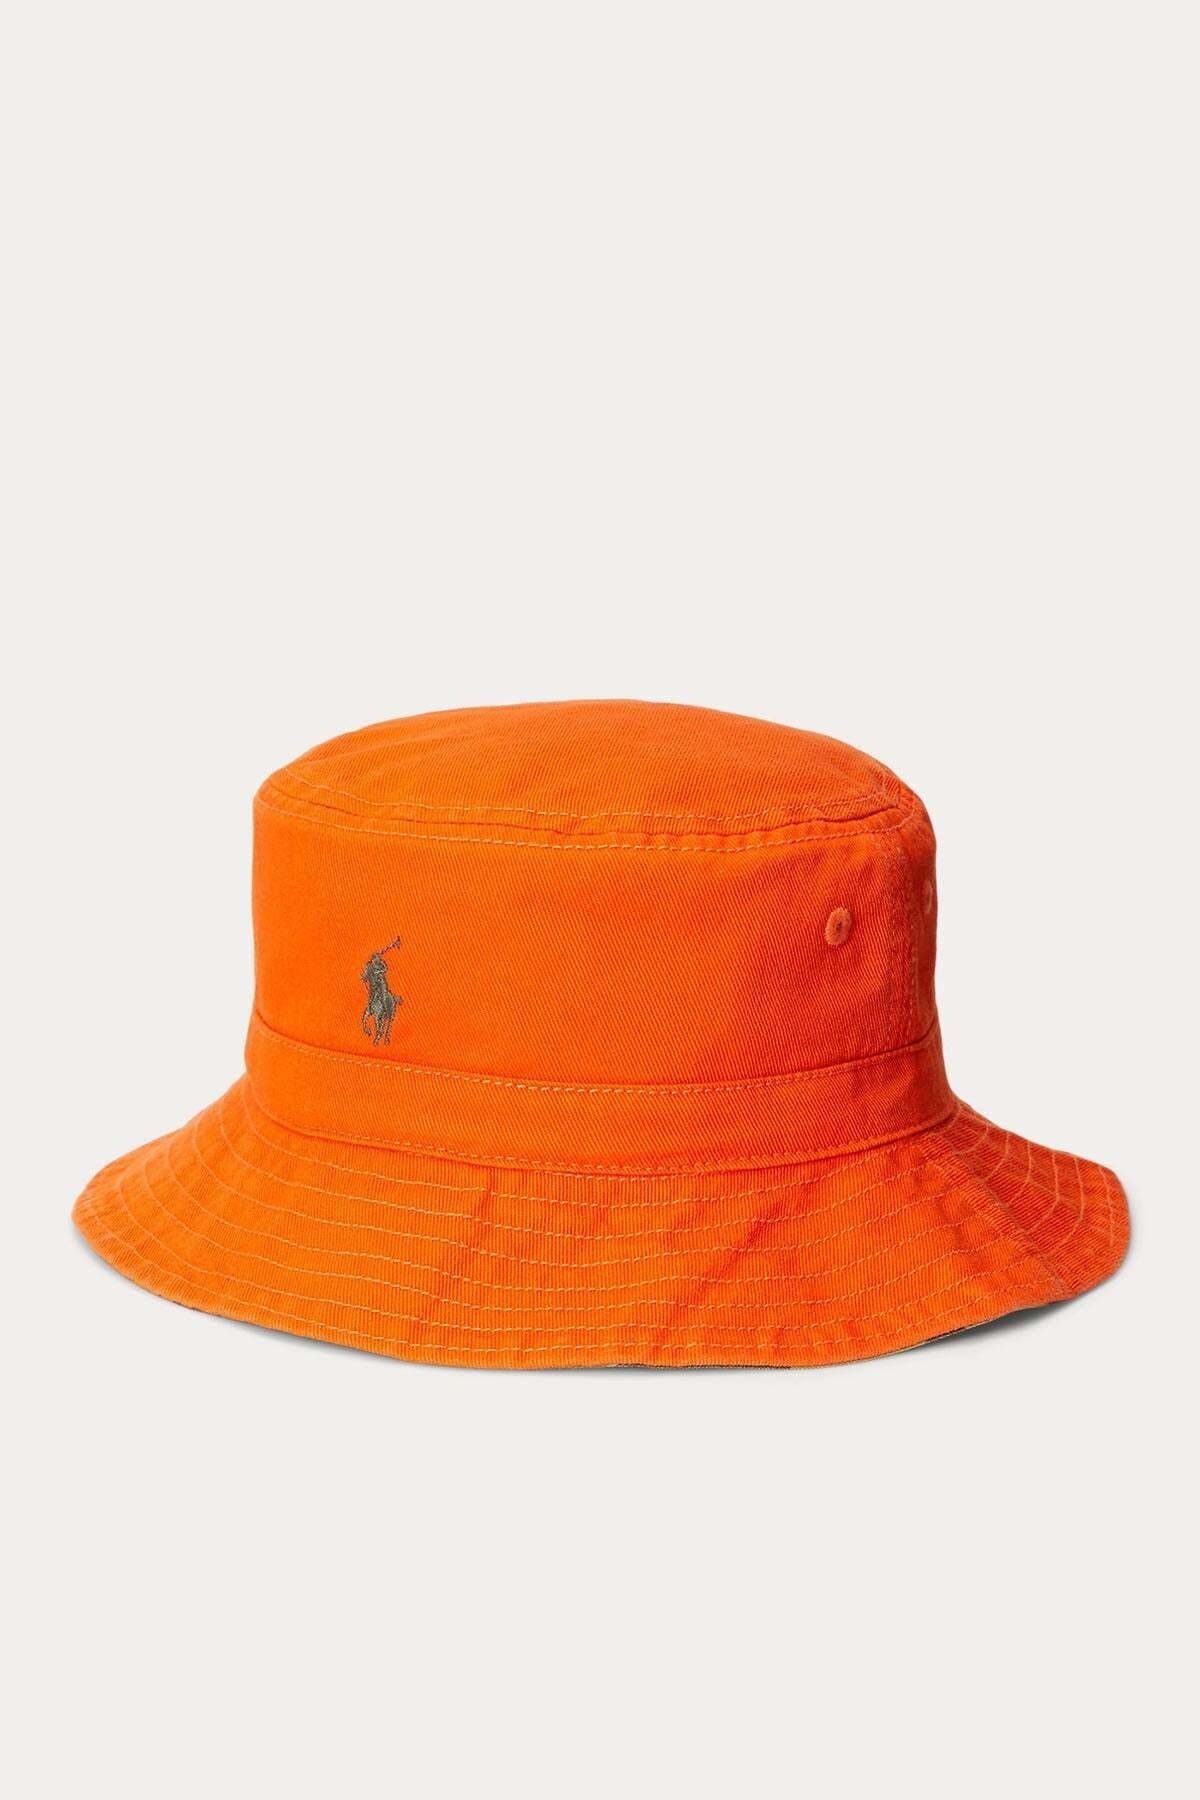 Ralph Lauren 2-4 Yaş Çocuk Çift Taraflı Bucket Şapka